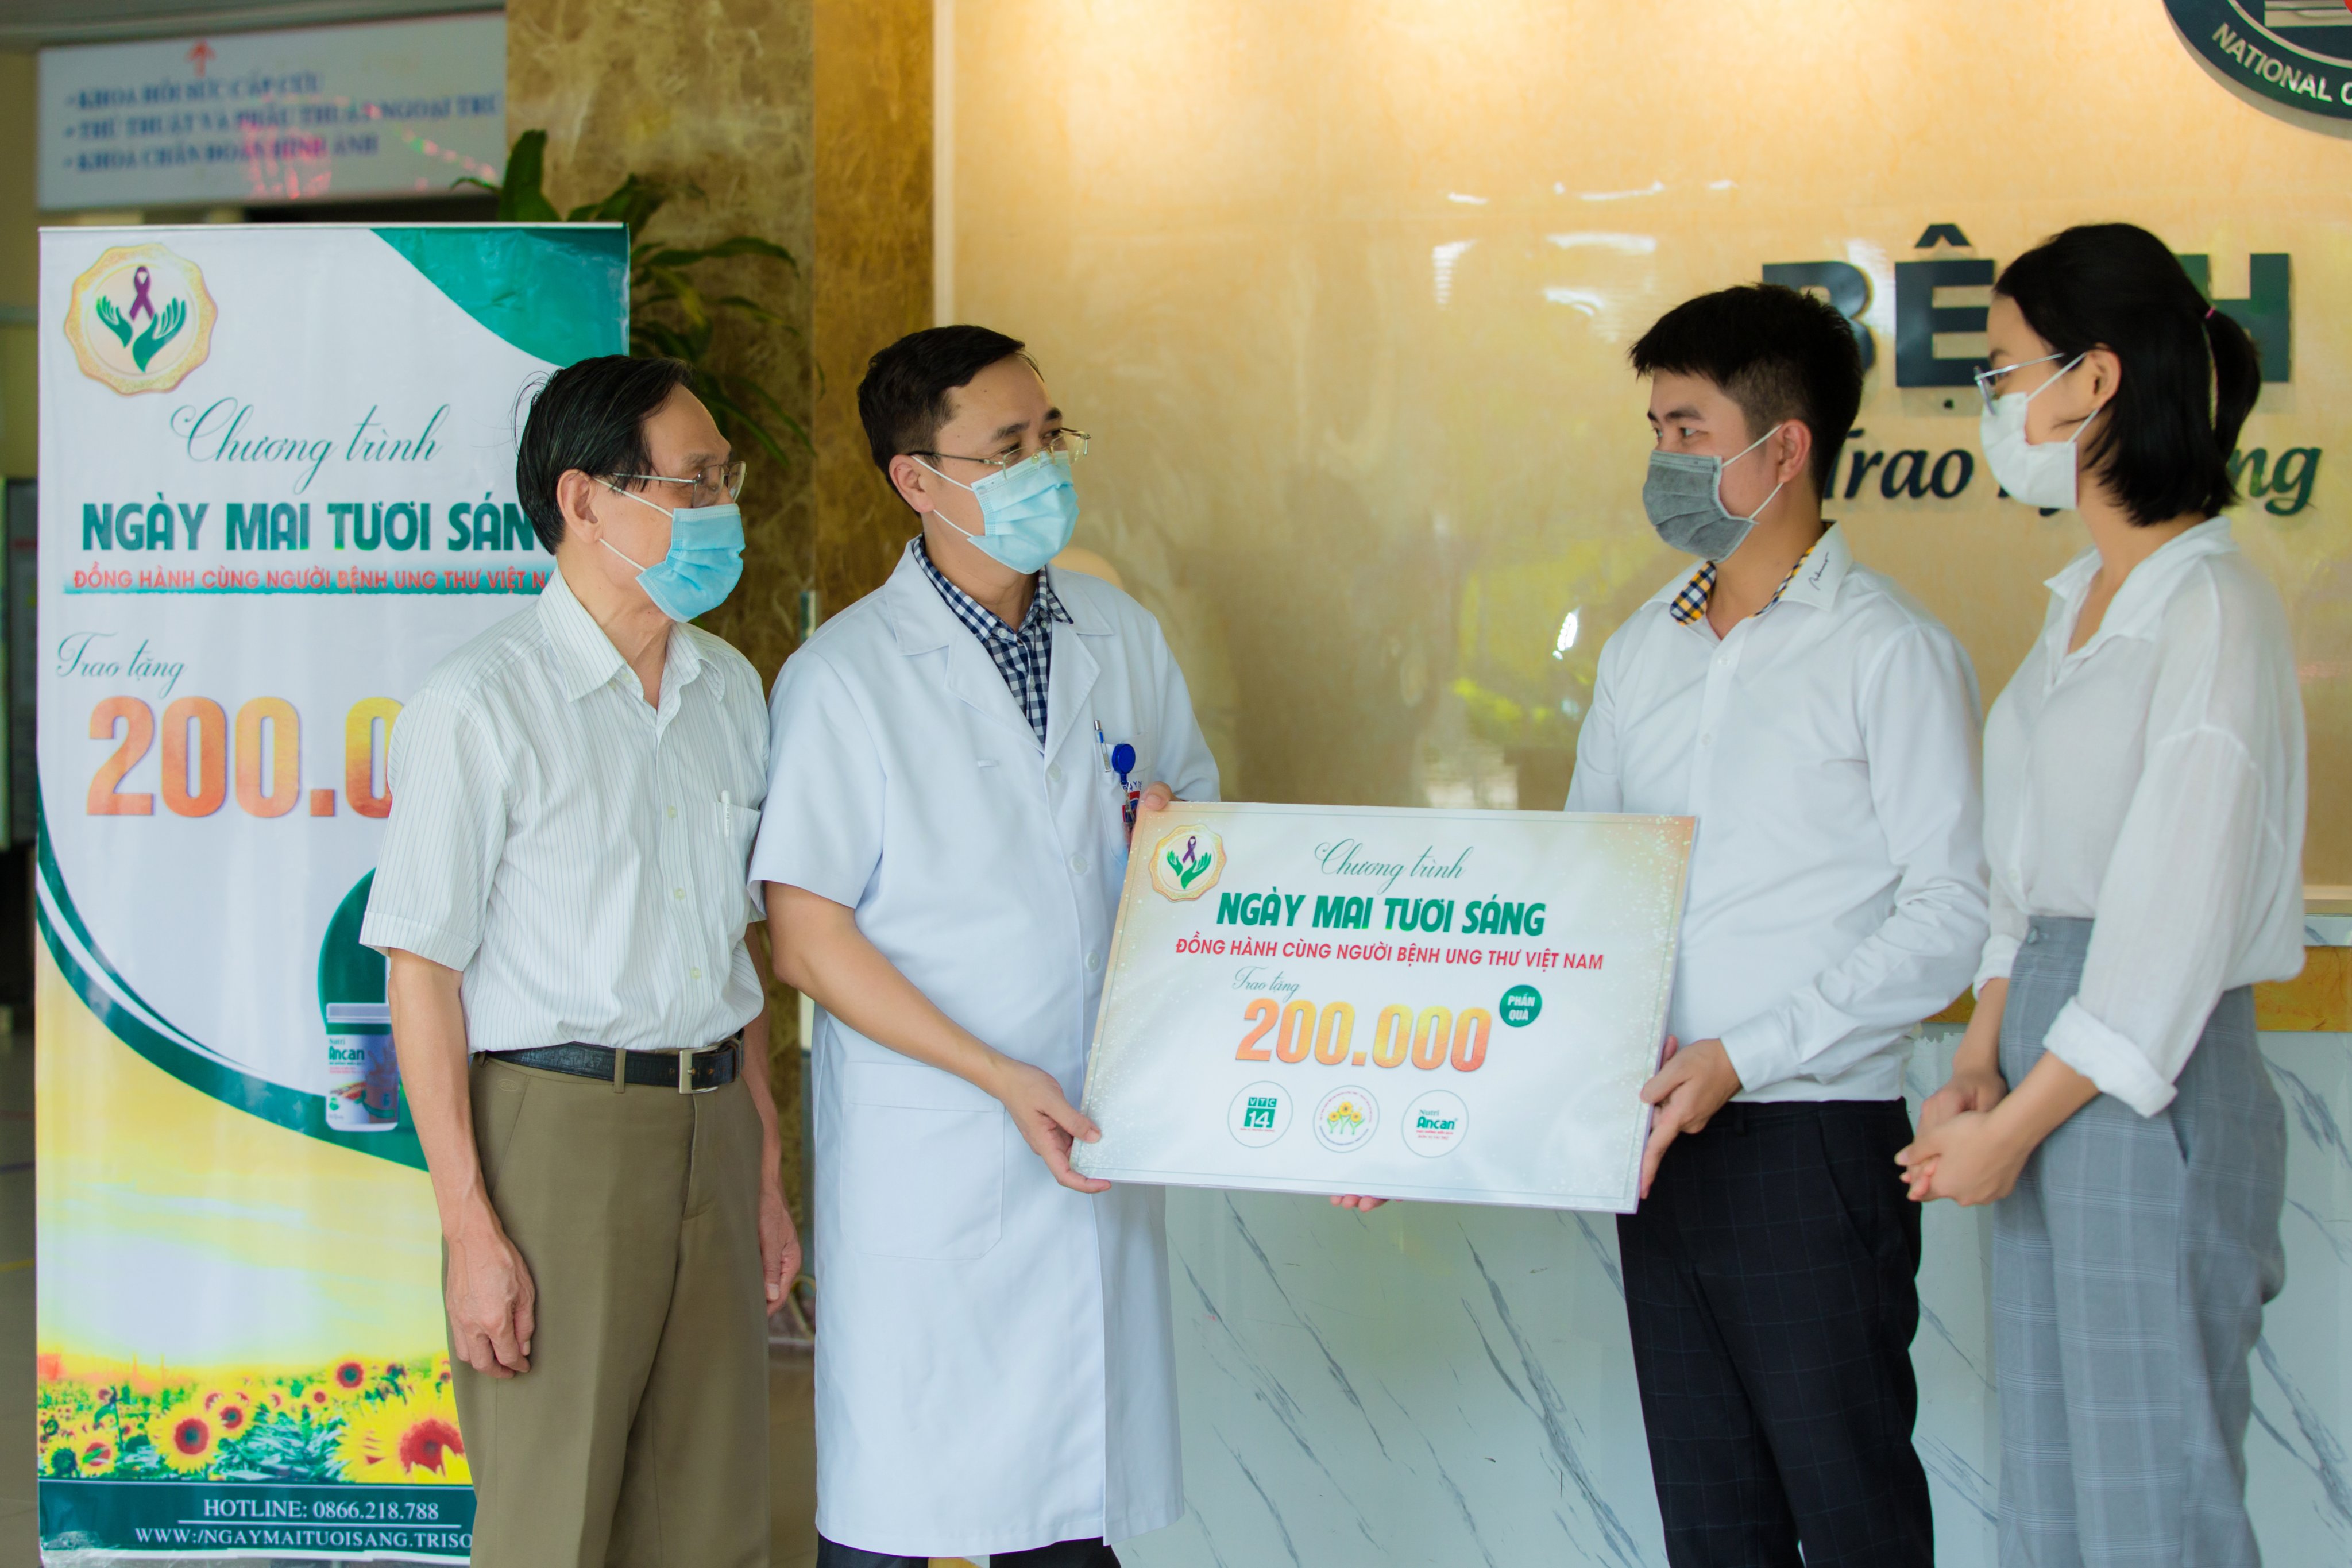 Báo Dân Trí: Nutri Ancan trao 200.000 suất quà dành tặng người bệnh ung thư trên toàn quốc